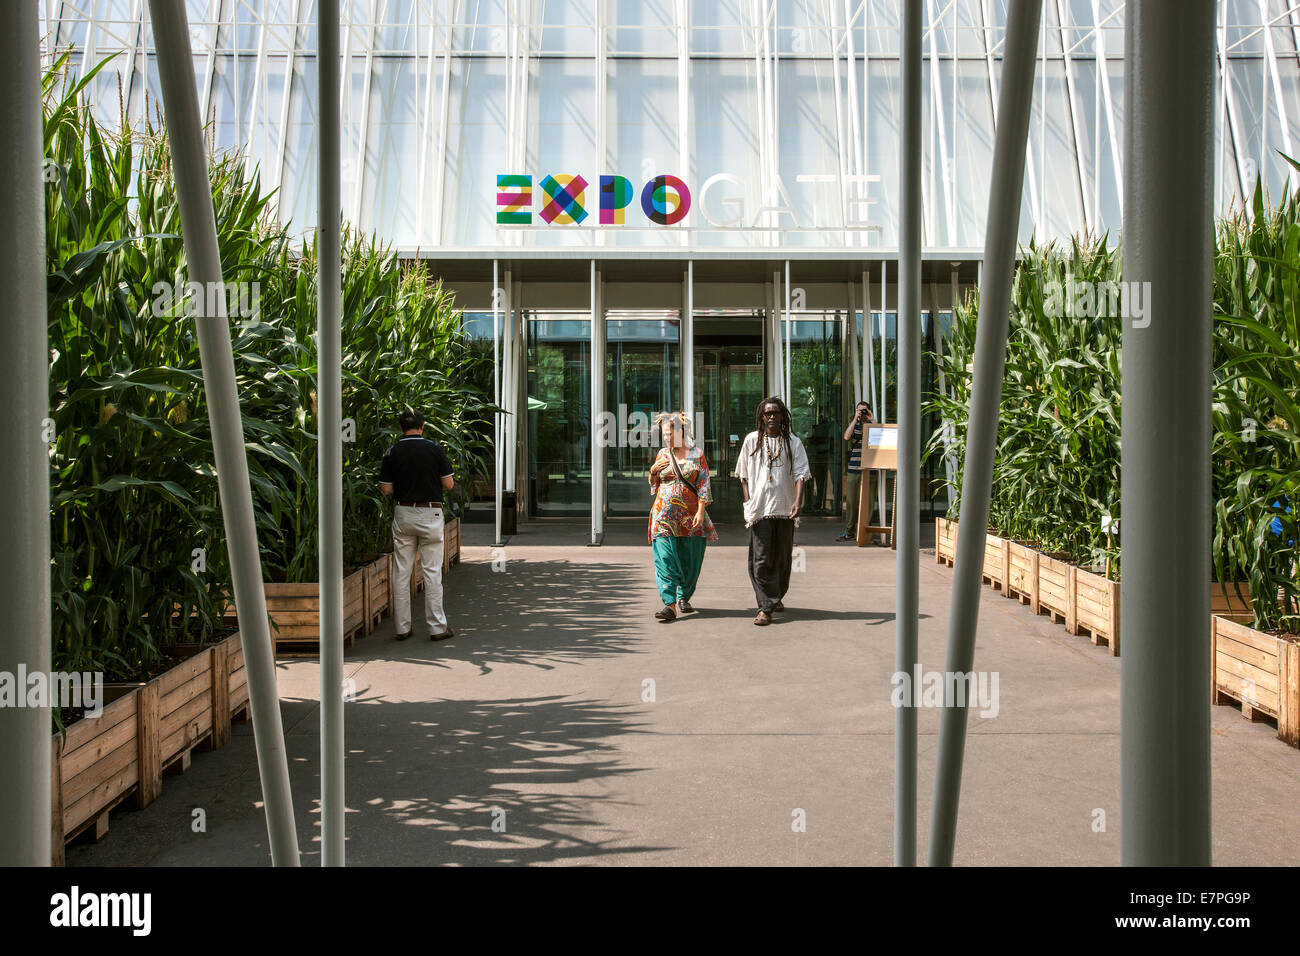 Milán, la Expo 2015, EXPOGATE, entrada, feria, Exposición Universal, GATE, Infopoint, maíz parterres, gente, Lombardía, Italia Foto de stock